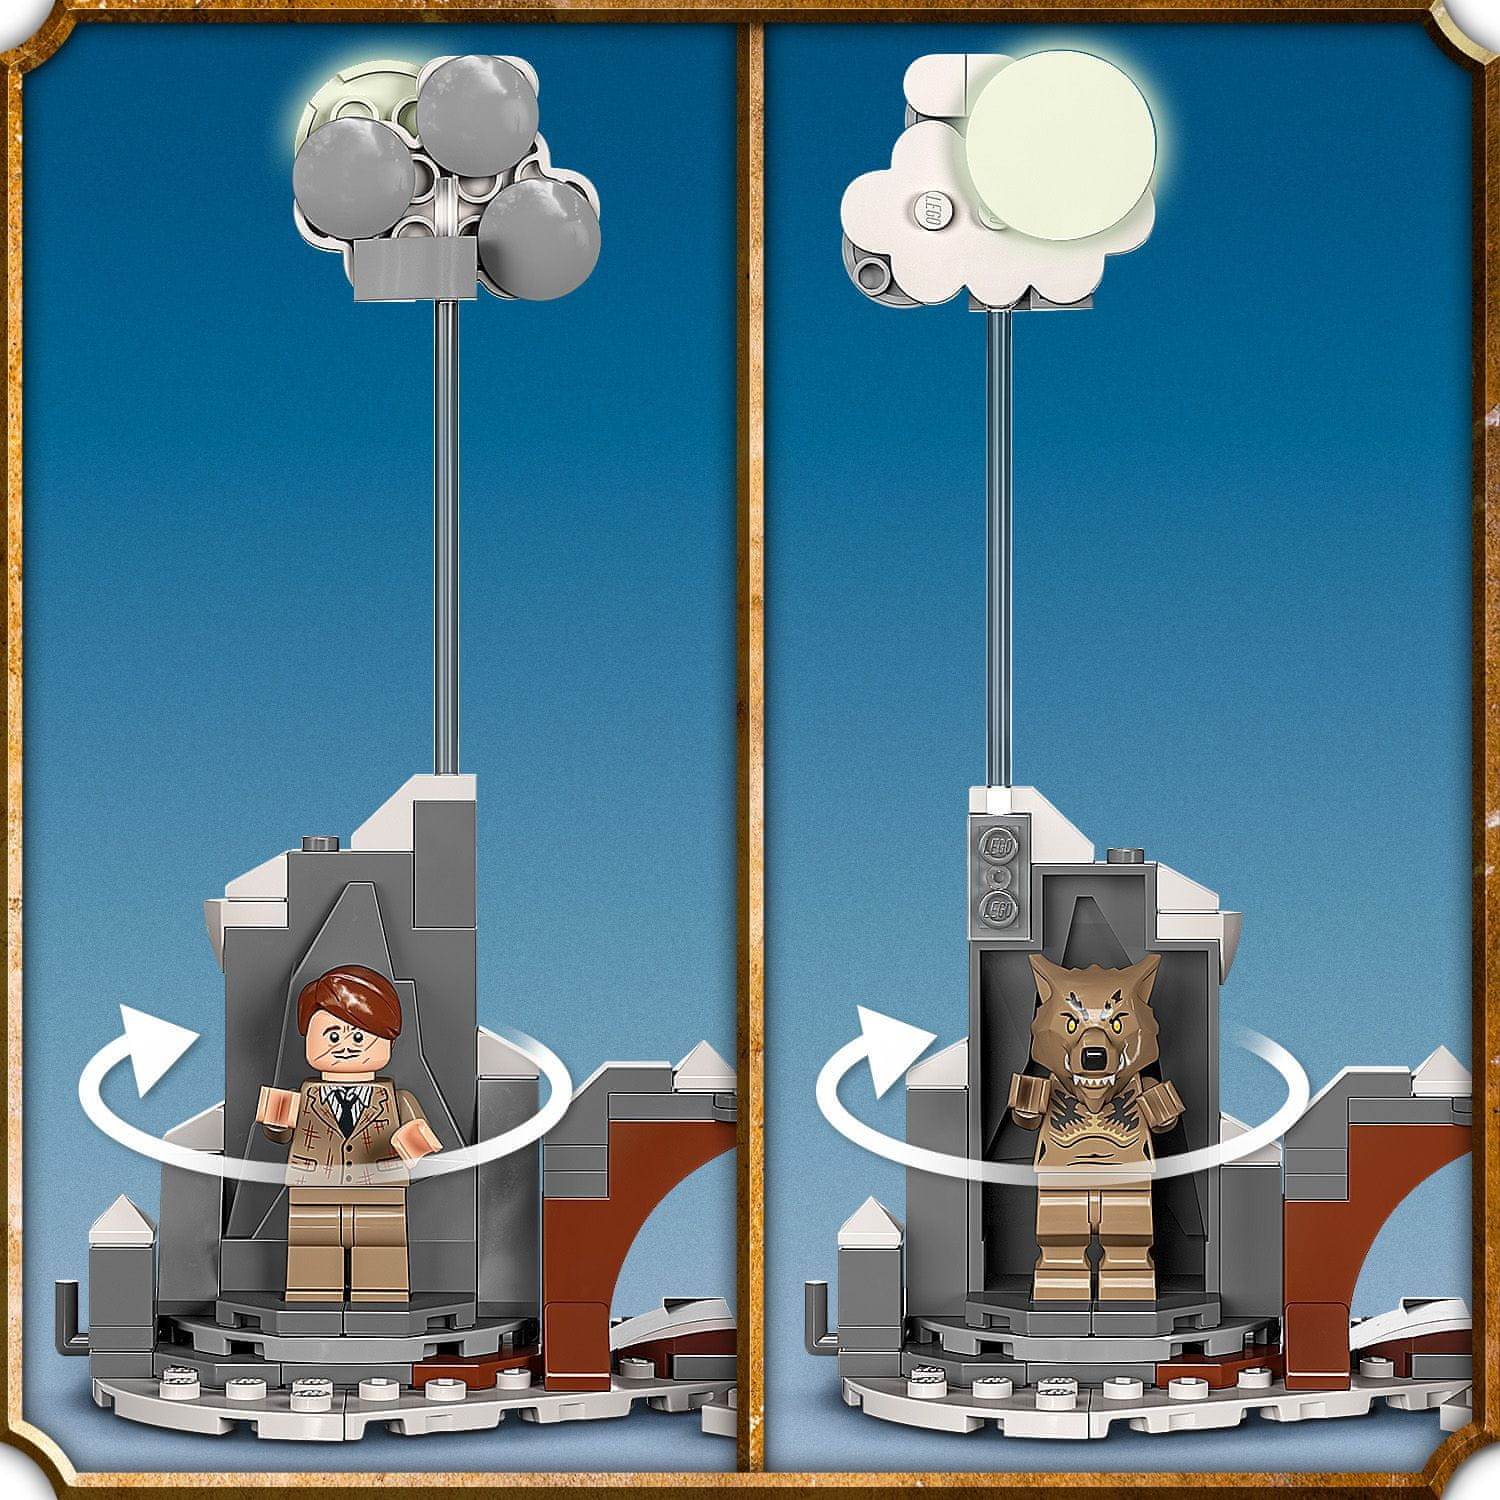 LEGO Harry Potter 76407 Chroptící chýše a Vrba mlátička